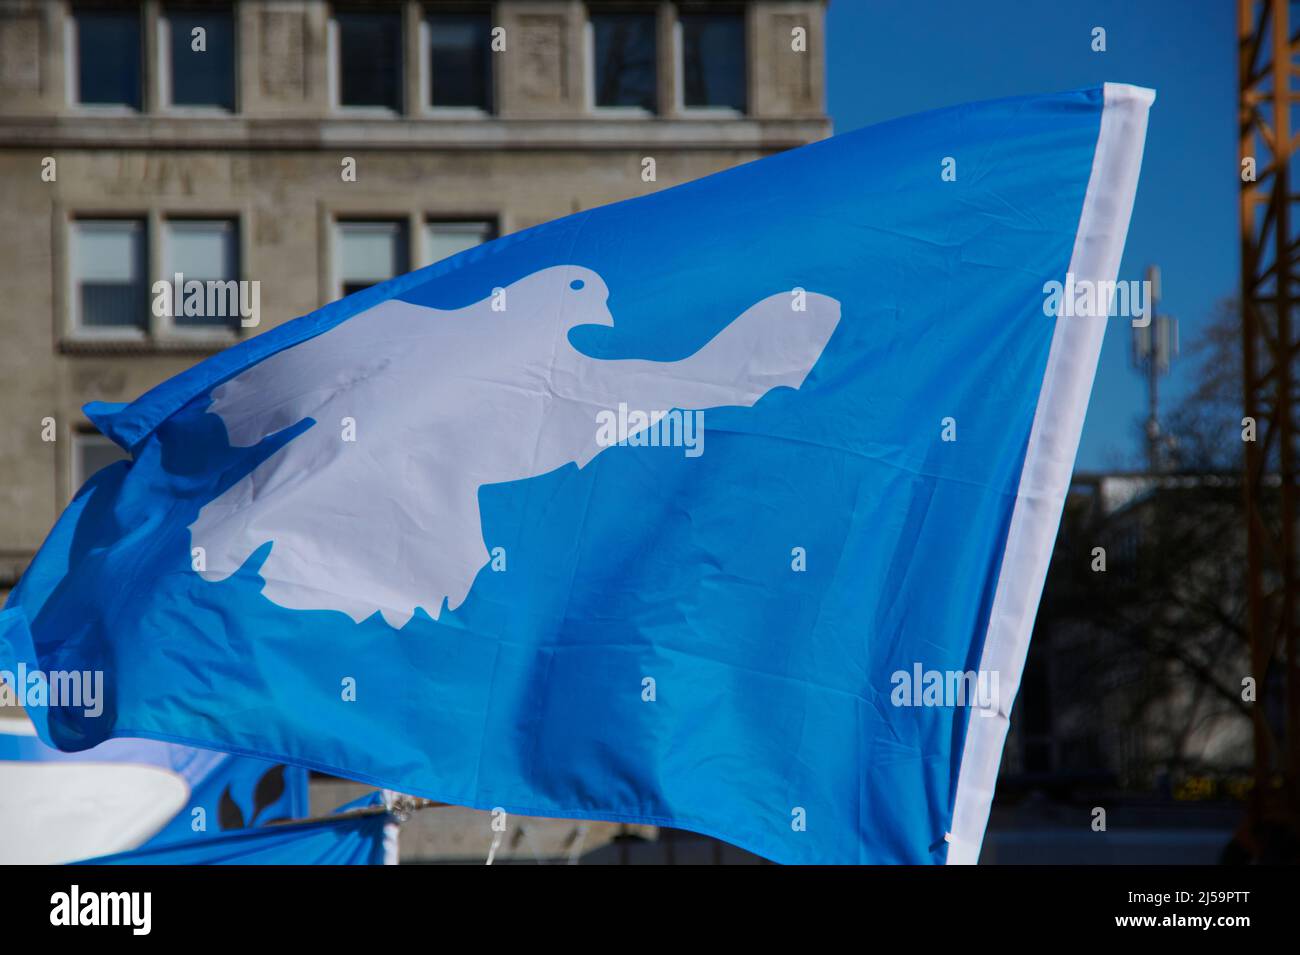 Das Symbol der Friedensbewegung: weisse Taube auf blauem Grund. Stock Photo